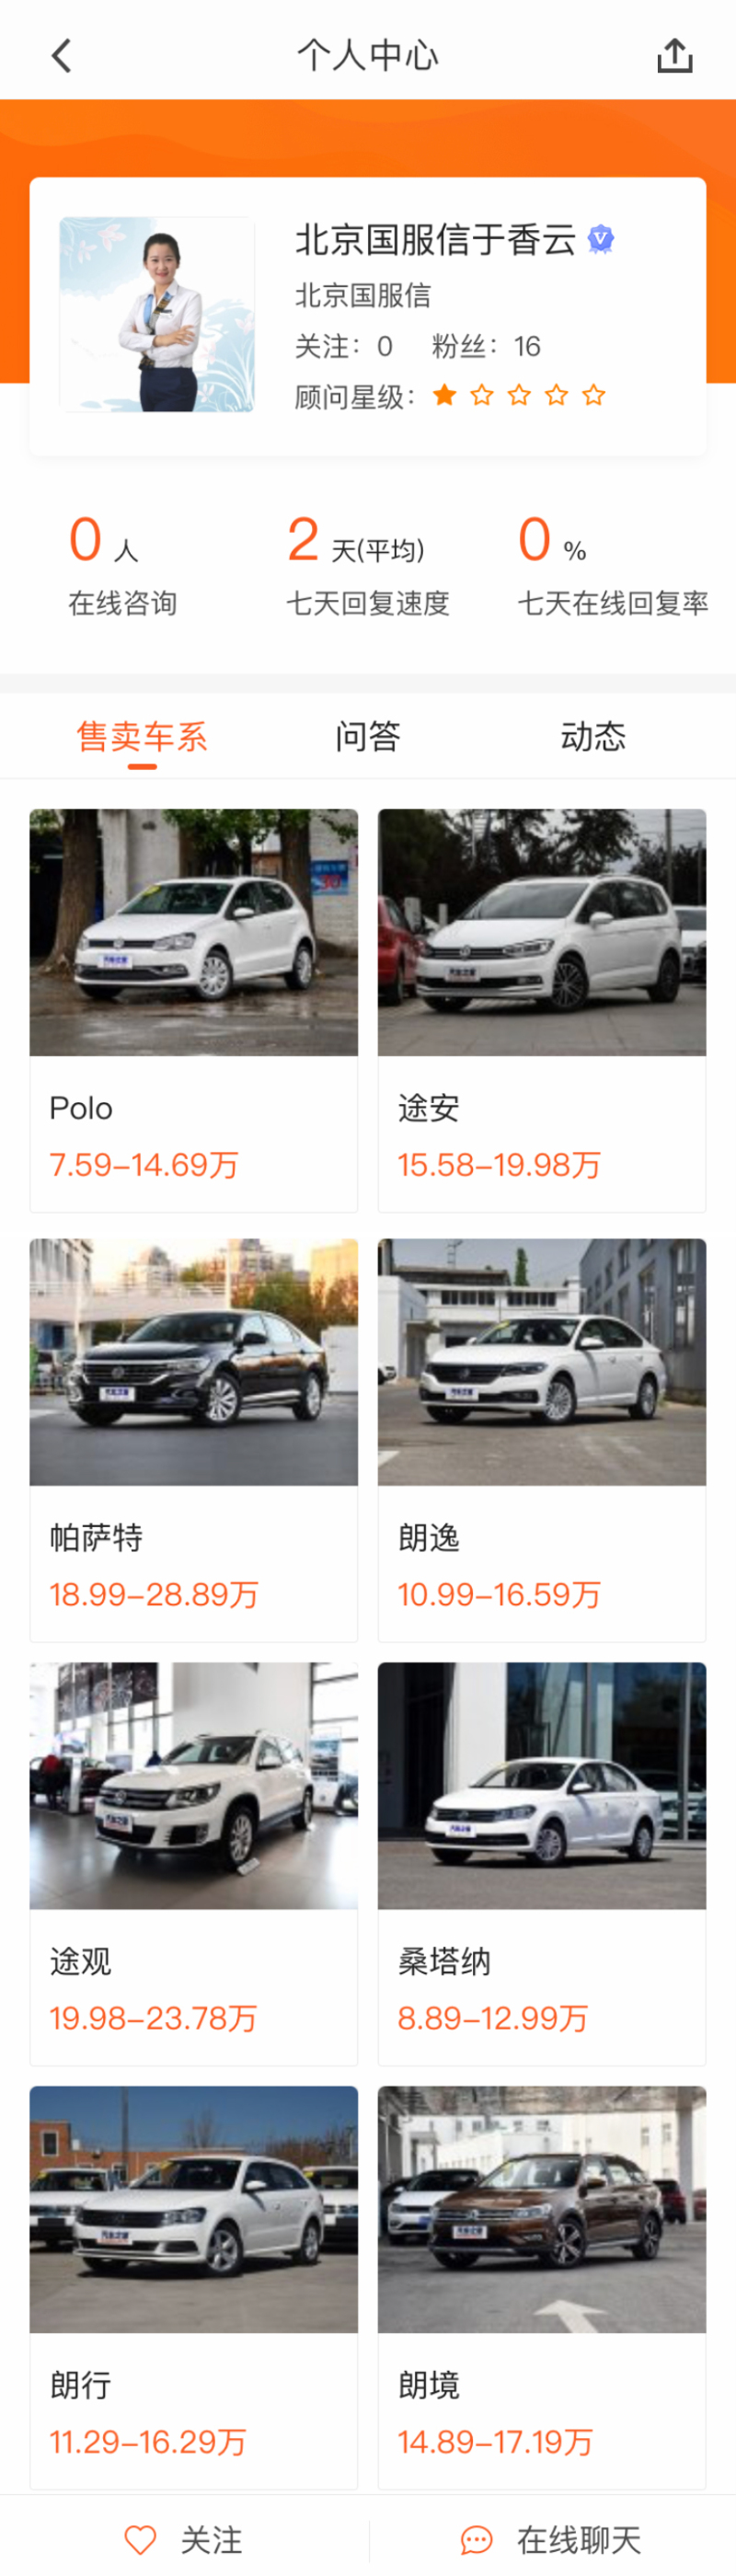 汽车销售员个人主页手机页面模板  html5网站源码下载 DIV+CSS代码下载